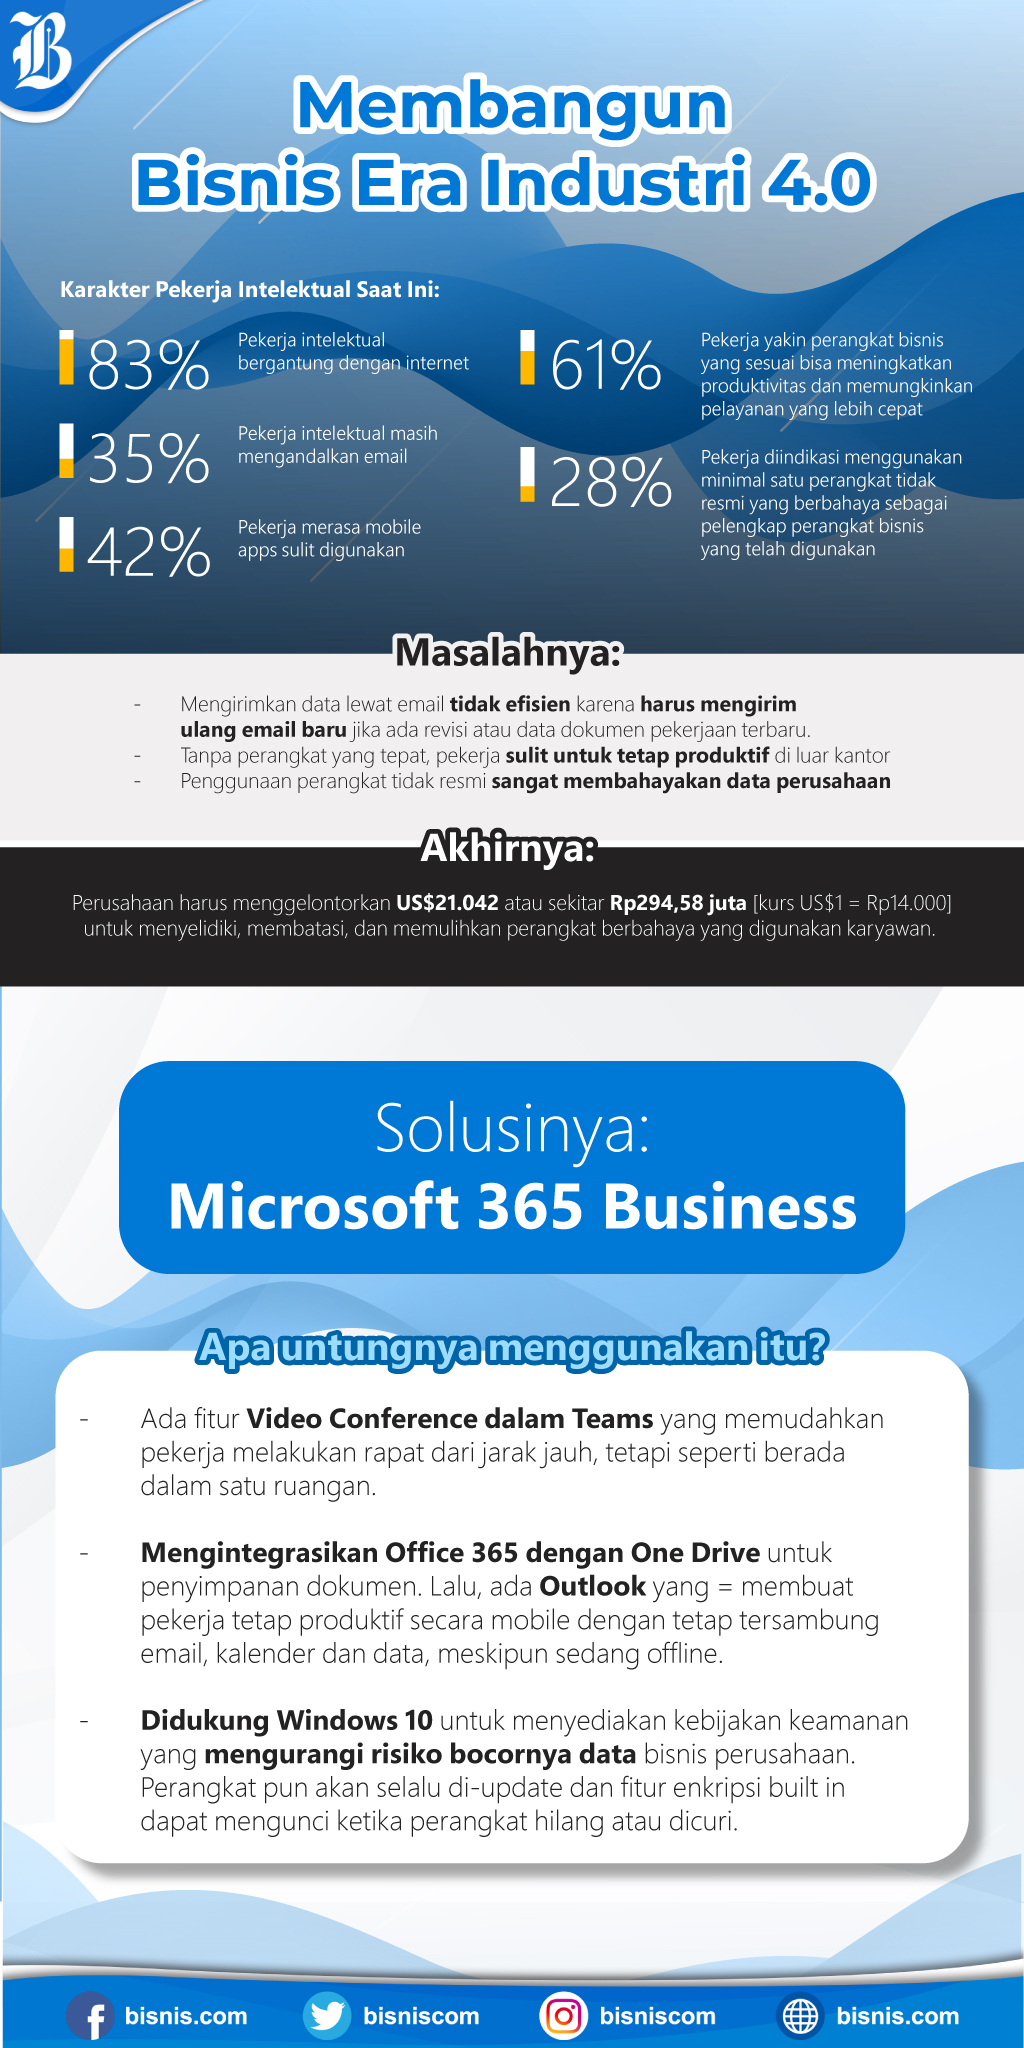  Microsoft 365 Business, Solusi Komplit Terbaru Bagi Pelaku Bisnis di Era Digital